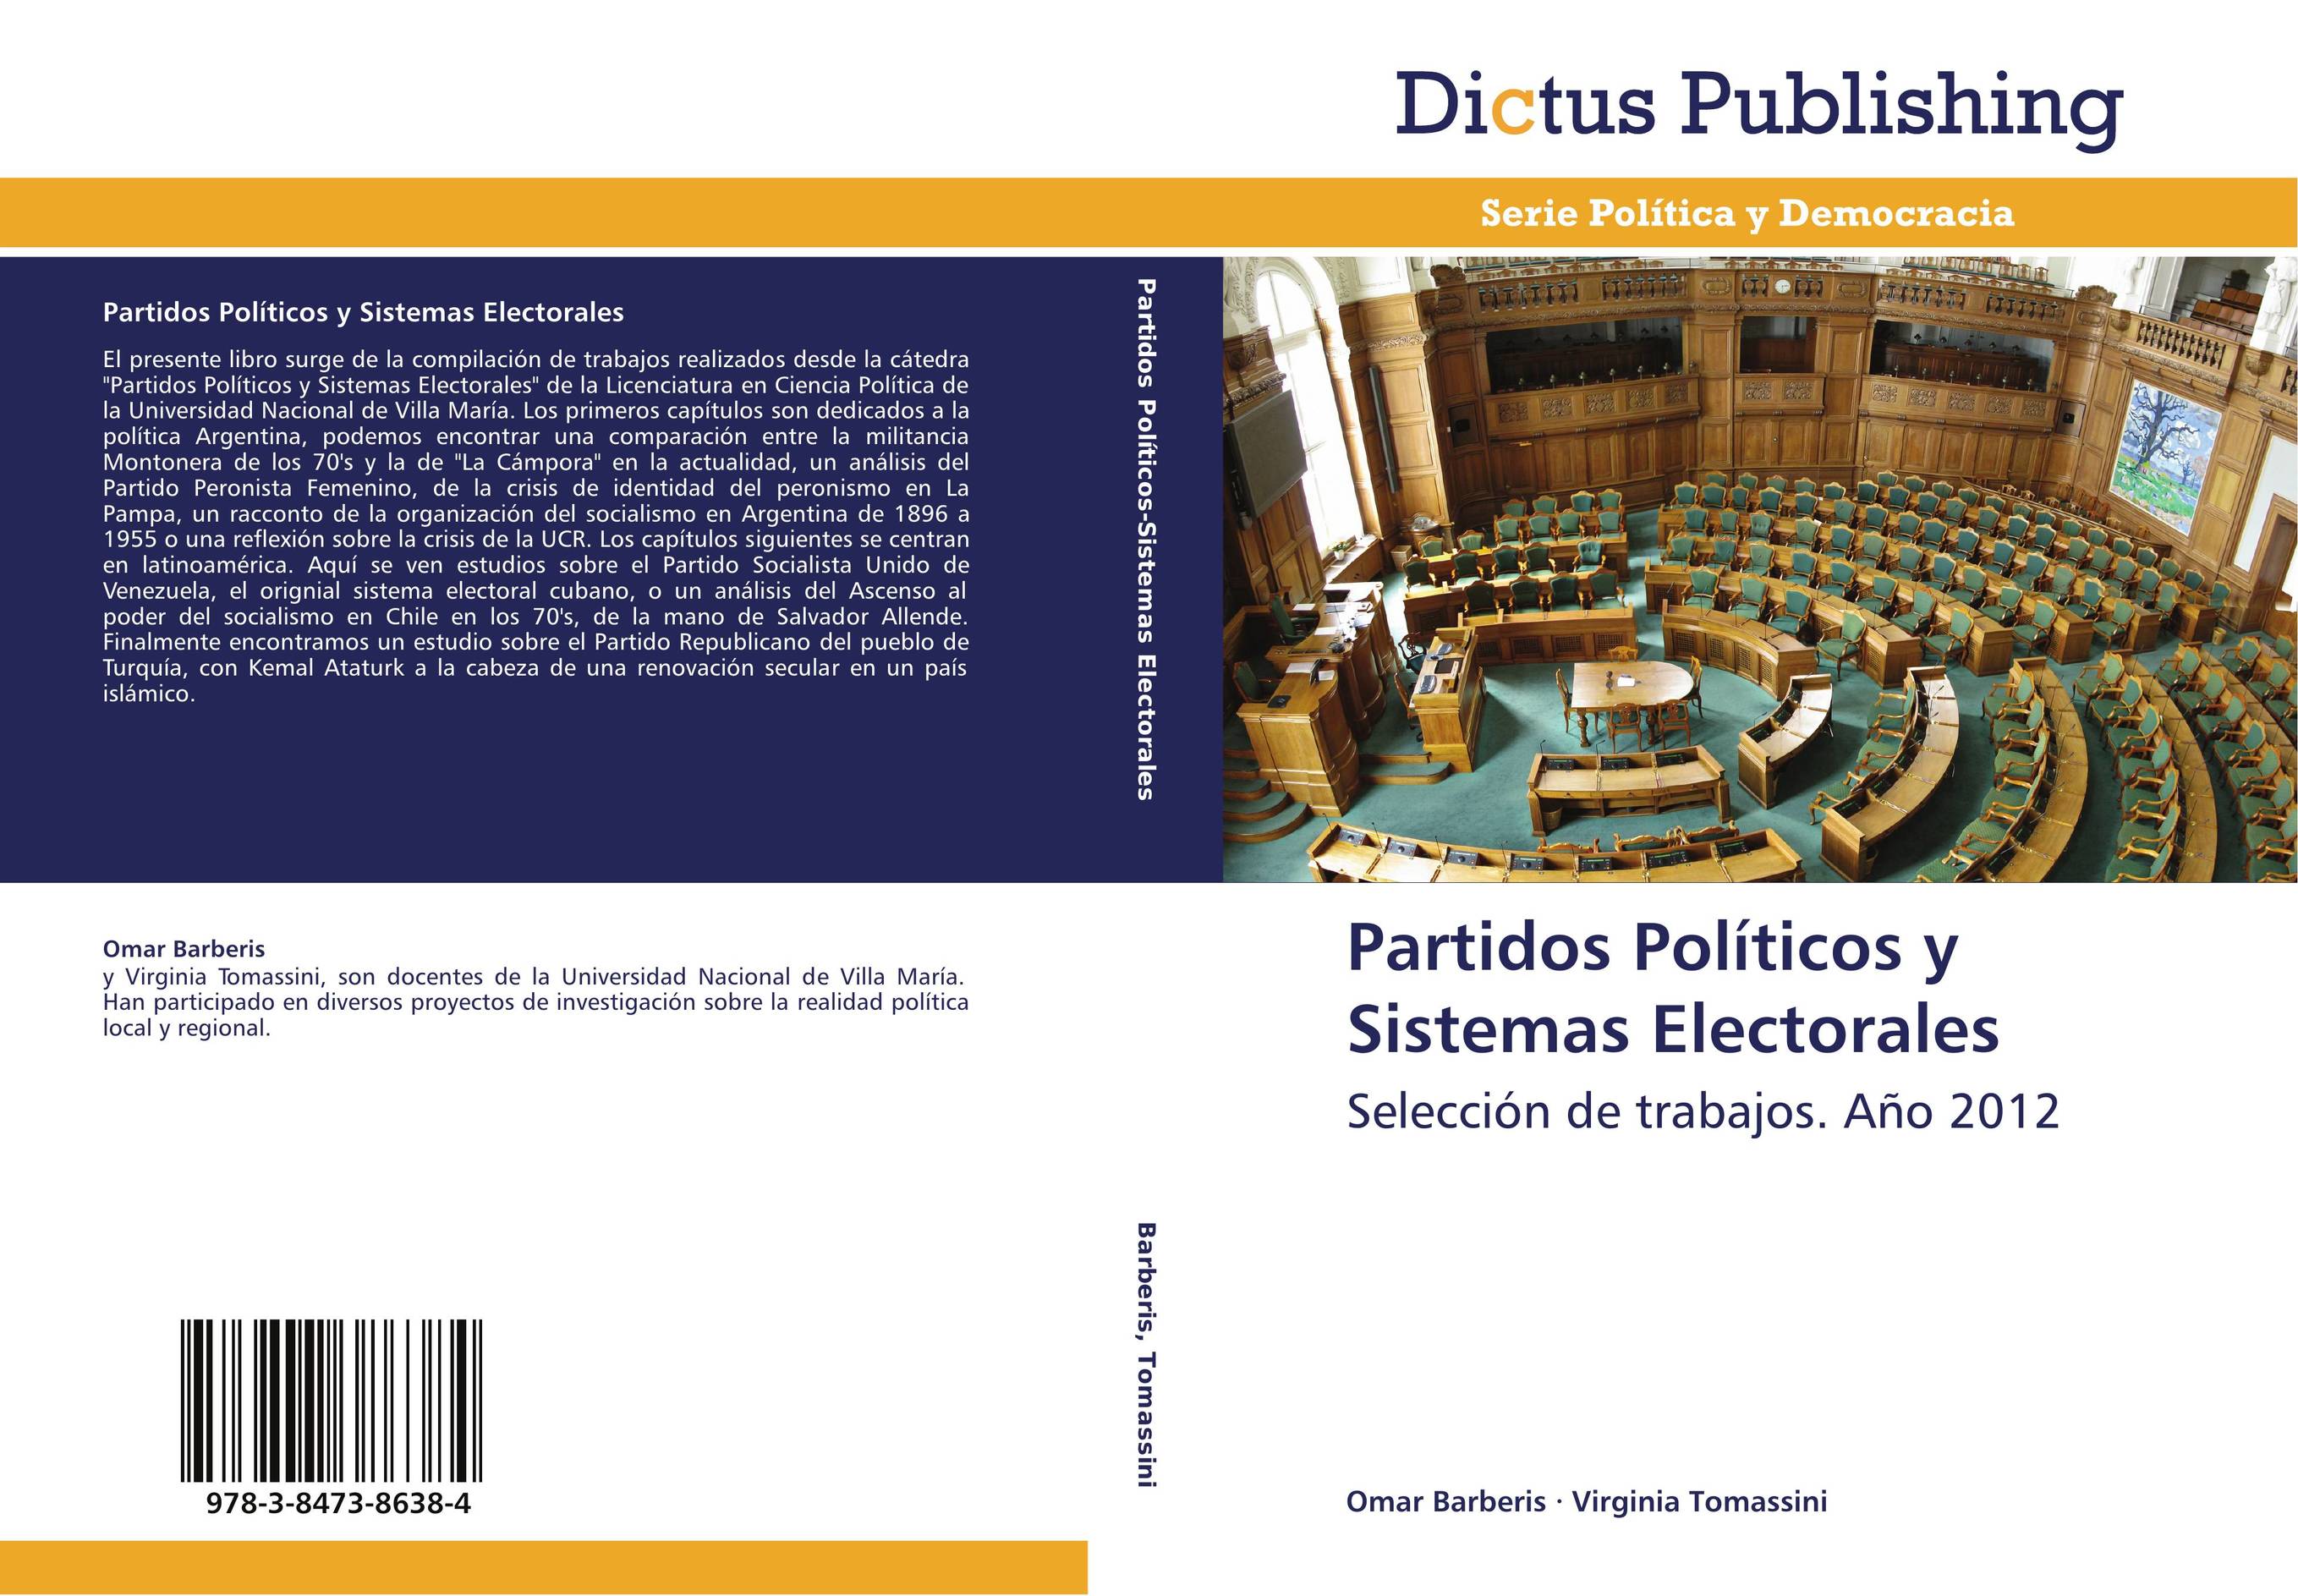 Partidos Políticos y Sistemas Electorales